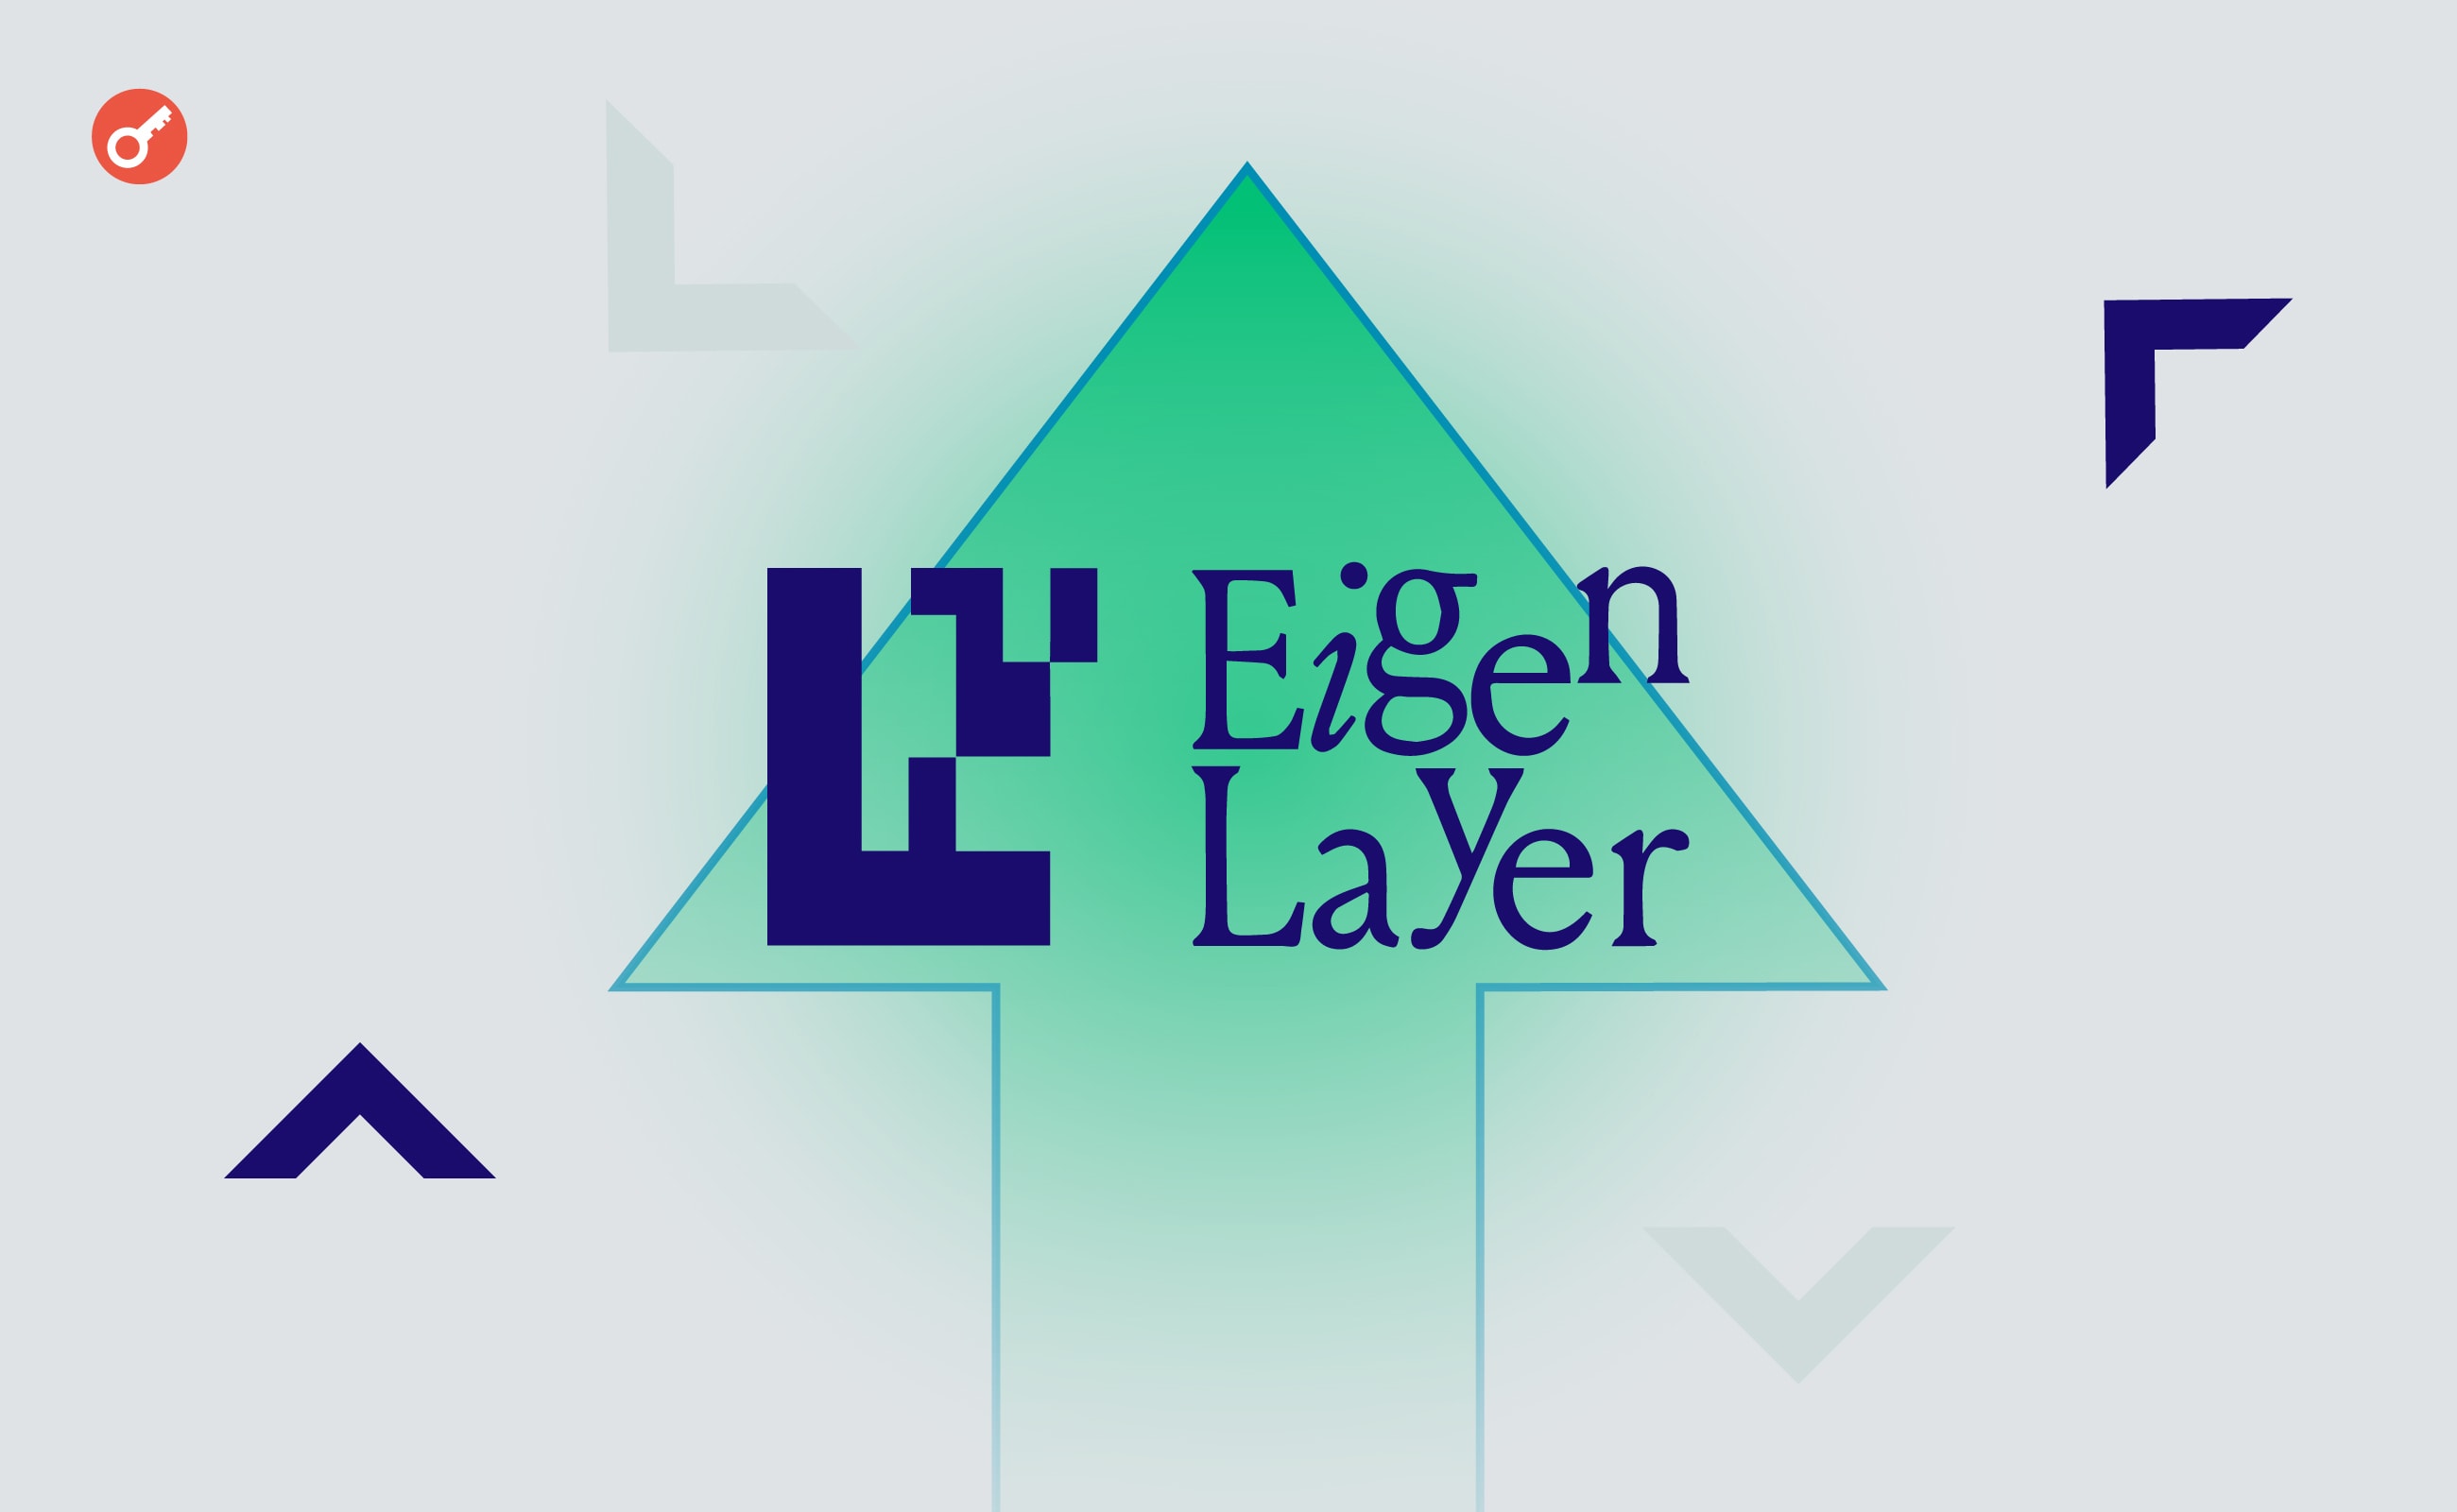 Ще один розробник Ethereum зізнався в роботі на EigenLayer. Головний колаж новини.